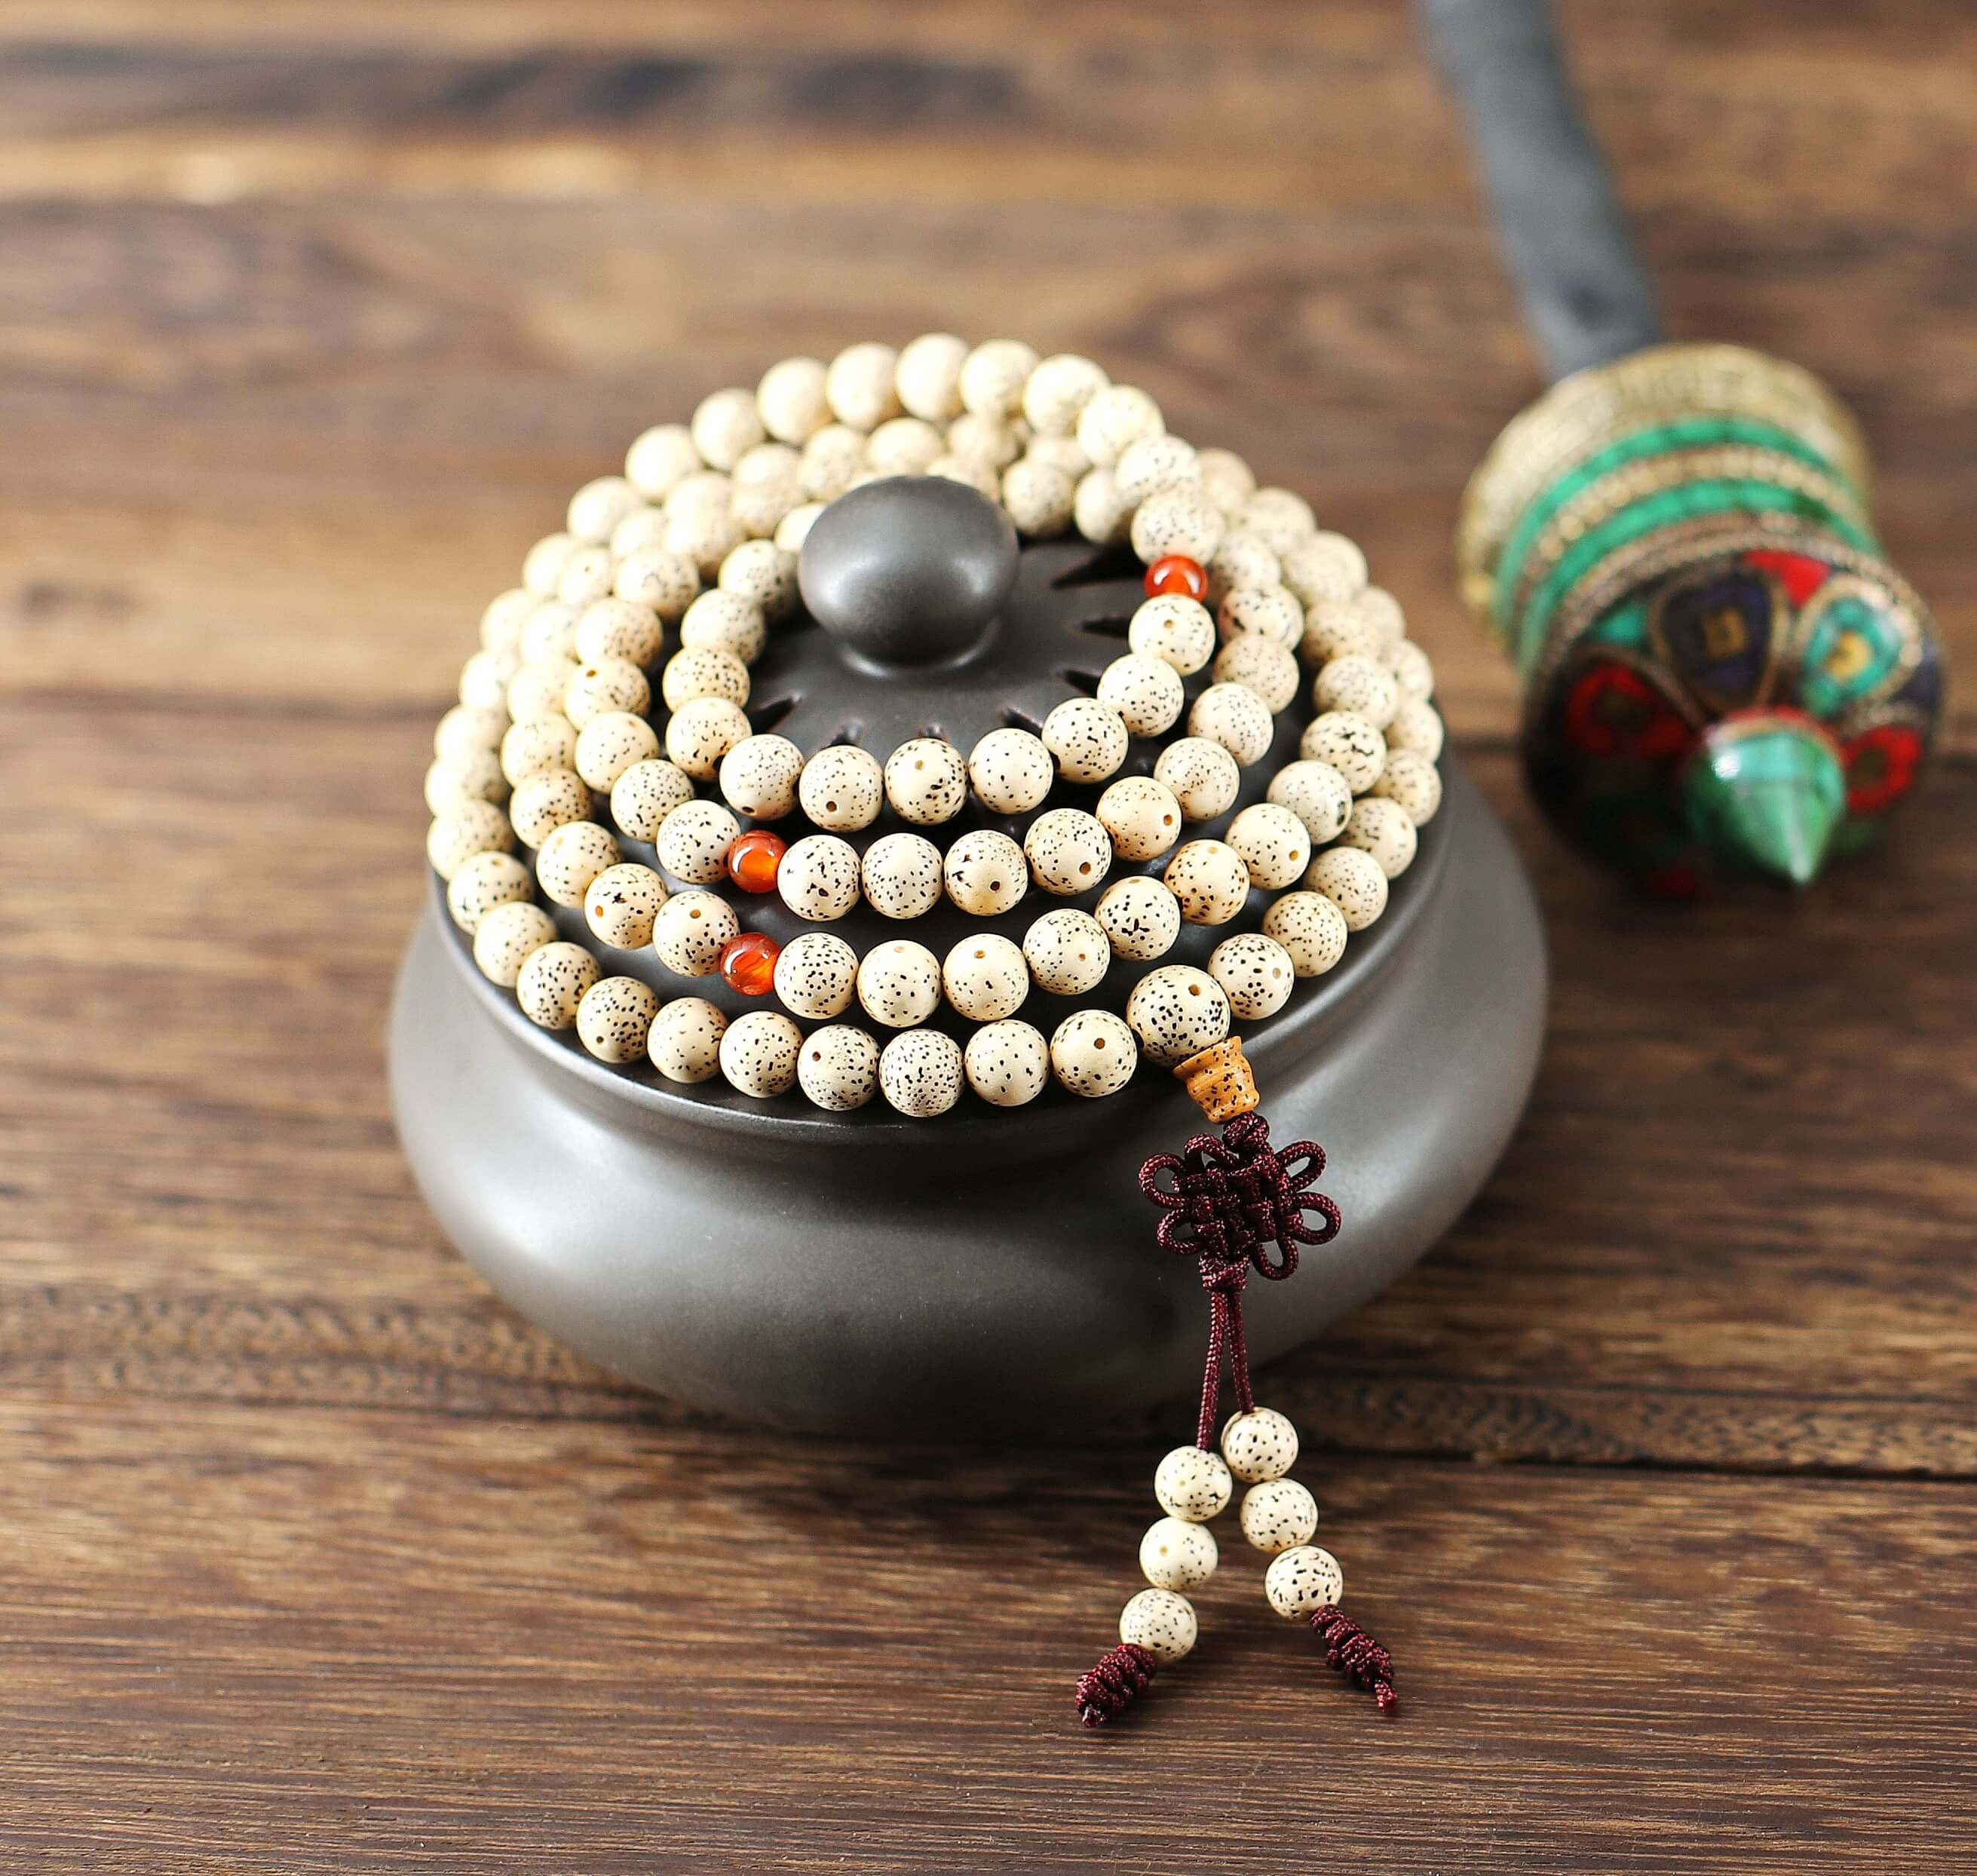 Ce collier mala, est confectionné à partir de graines de l'arbre sacré Bodhi (Arbre de l'Eveil) soigneusement polies et teintées selon la tradition.